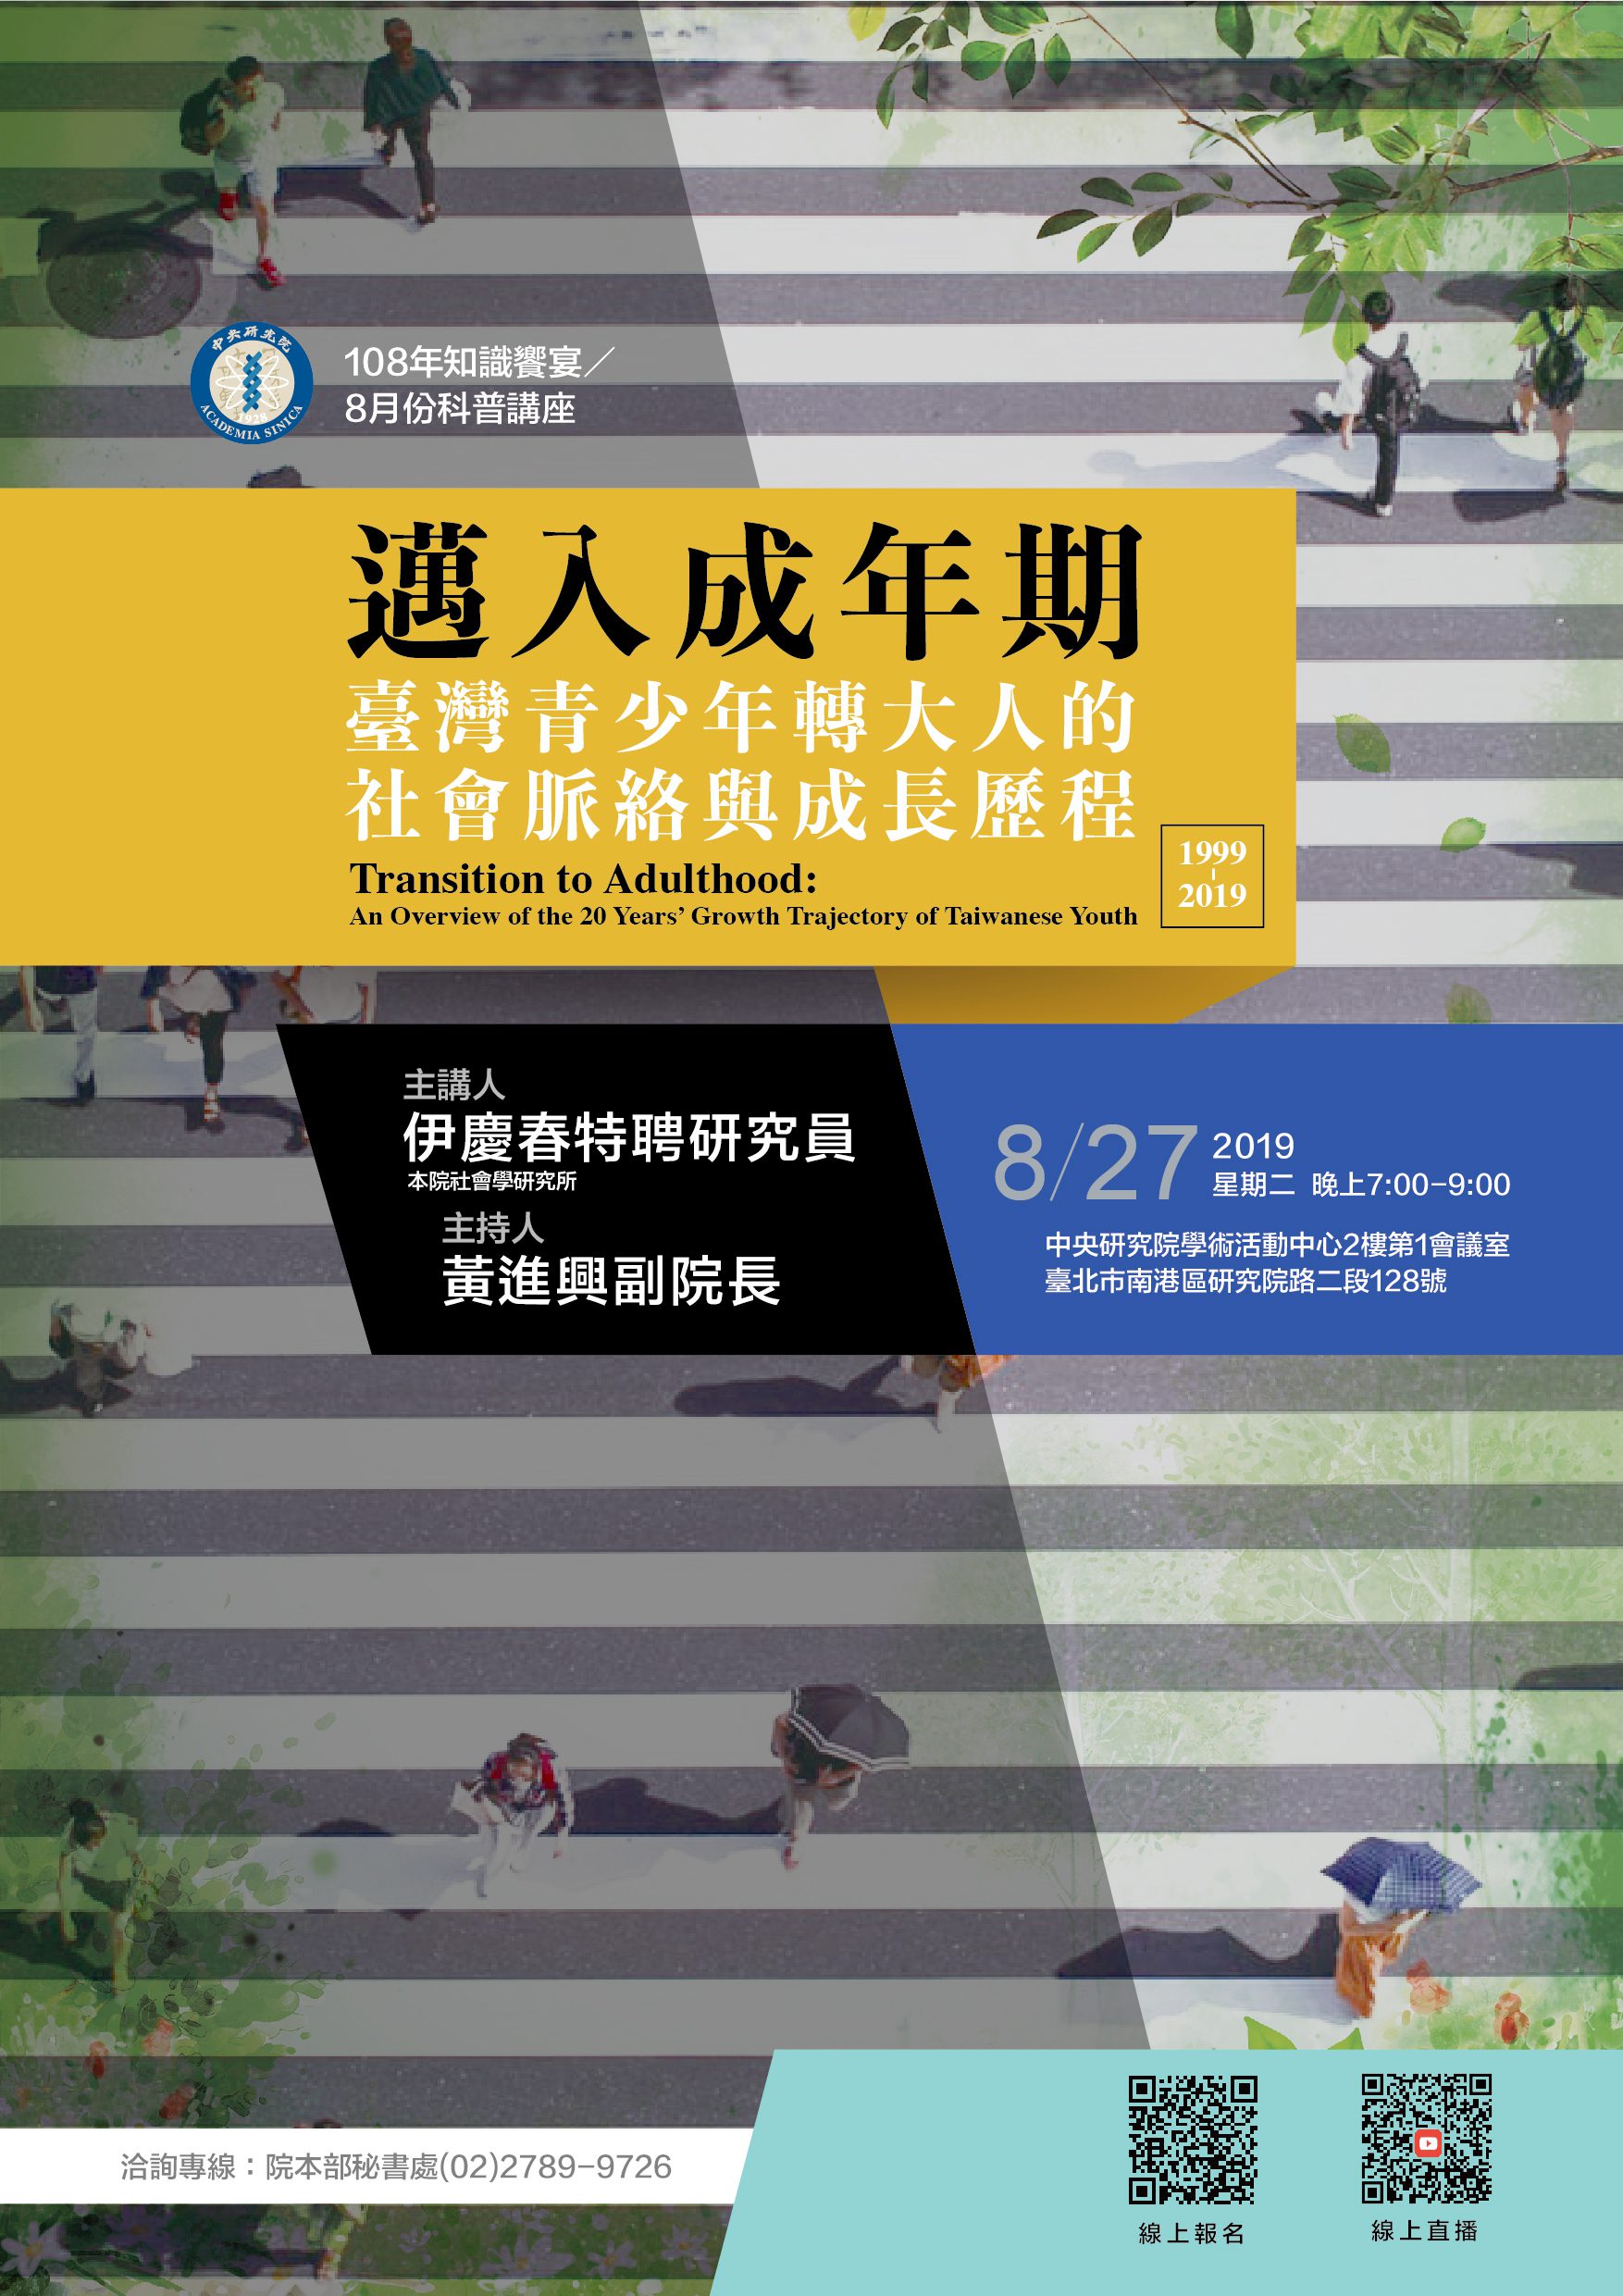 台灣青少年轉大人的社會脈絡與成長歷程-2